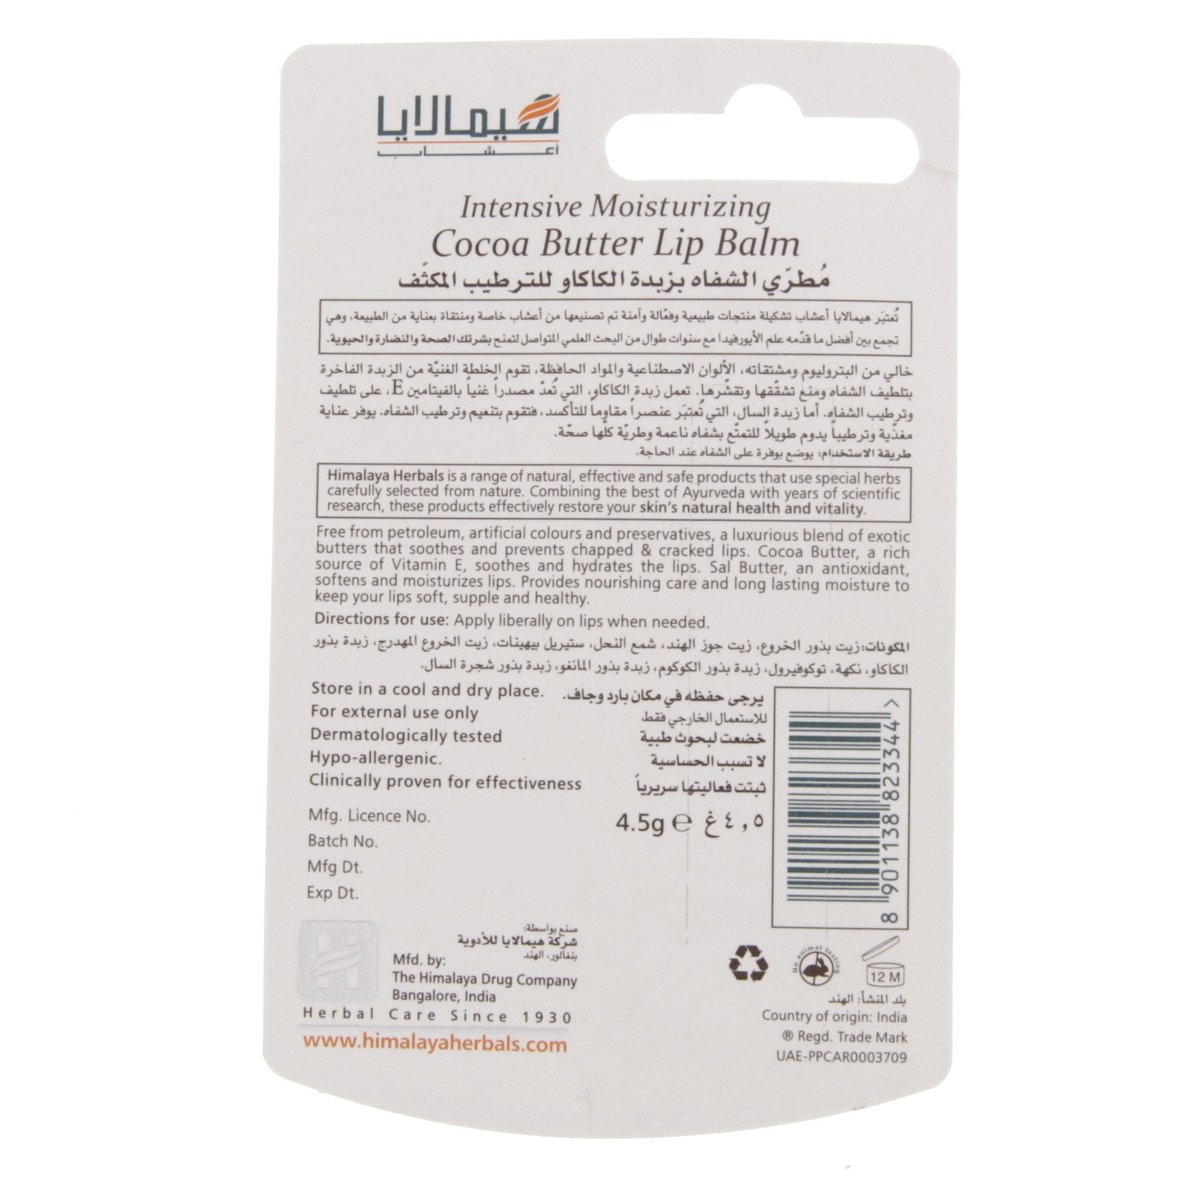 Himalaya Intensive Moisturizing Cocoa Butter Lip Balm 4.5 g